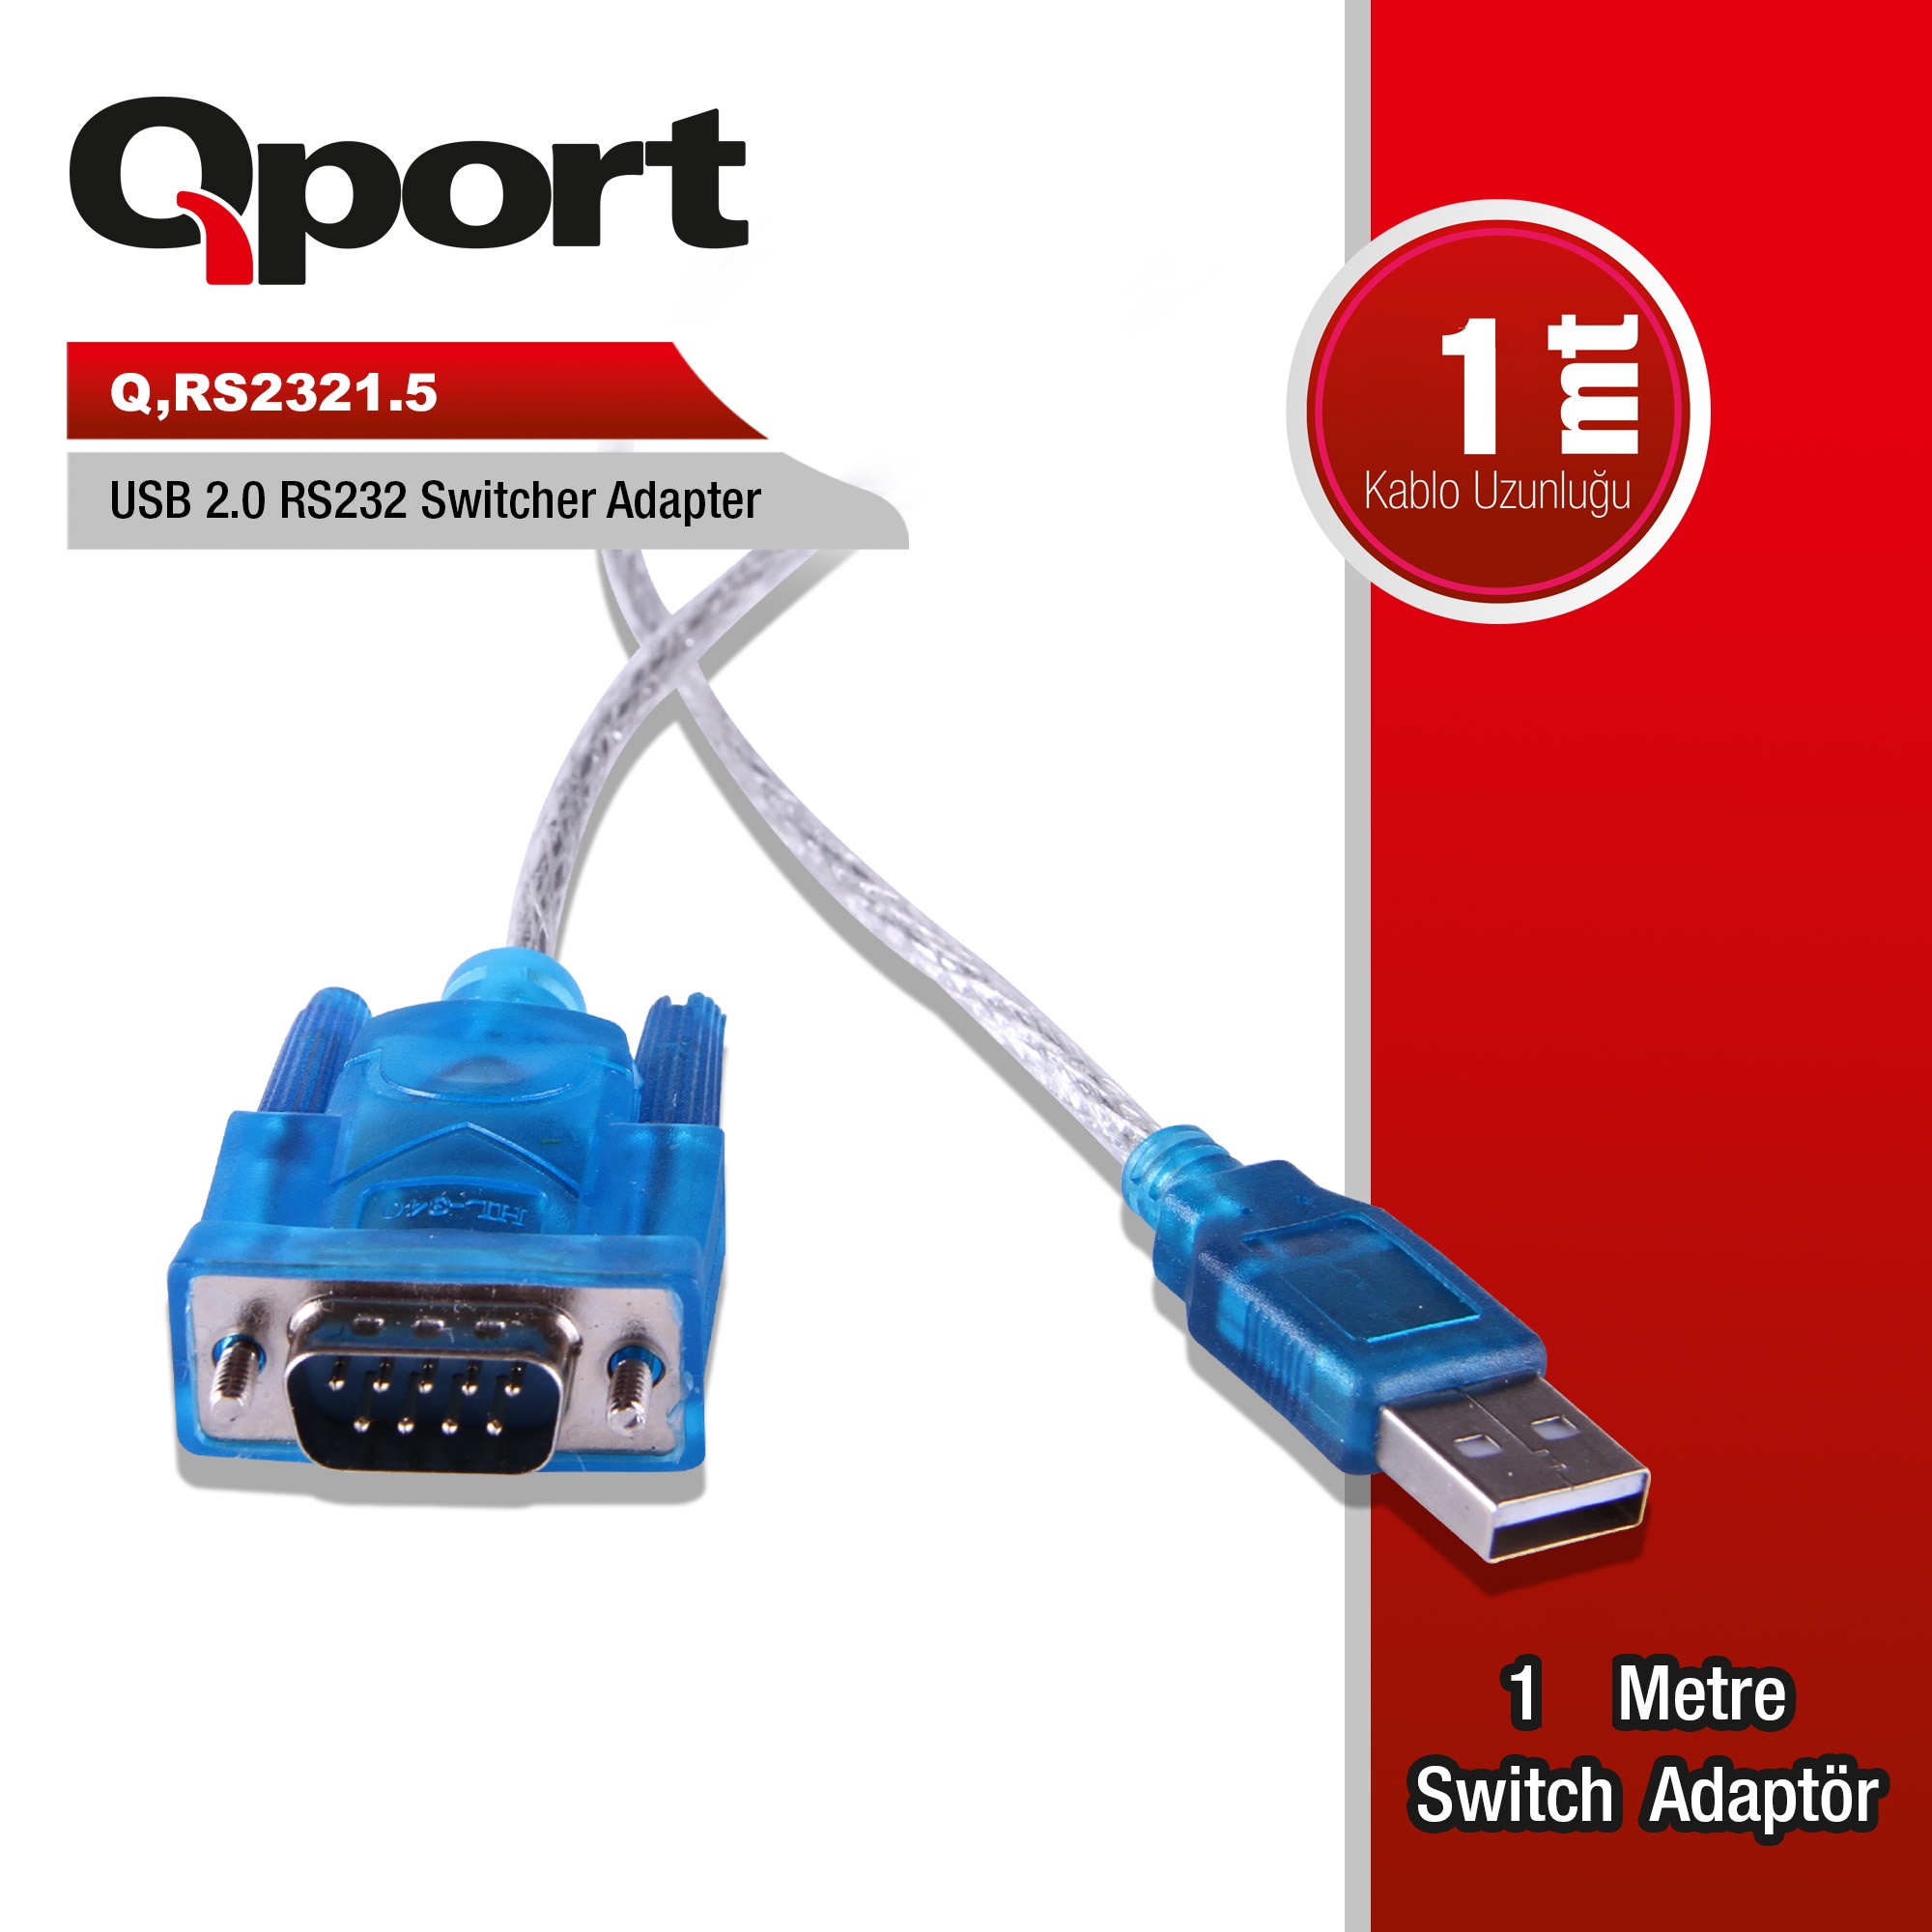 QPORT (Q-RS2321.5) USB2.0 TO RS232 CEVIRICI KABLO 1M